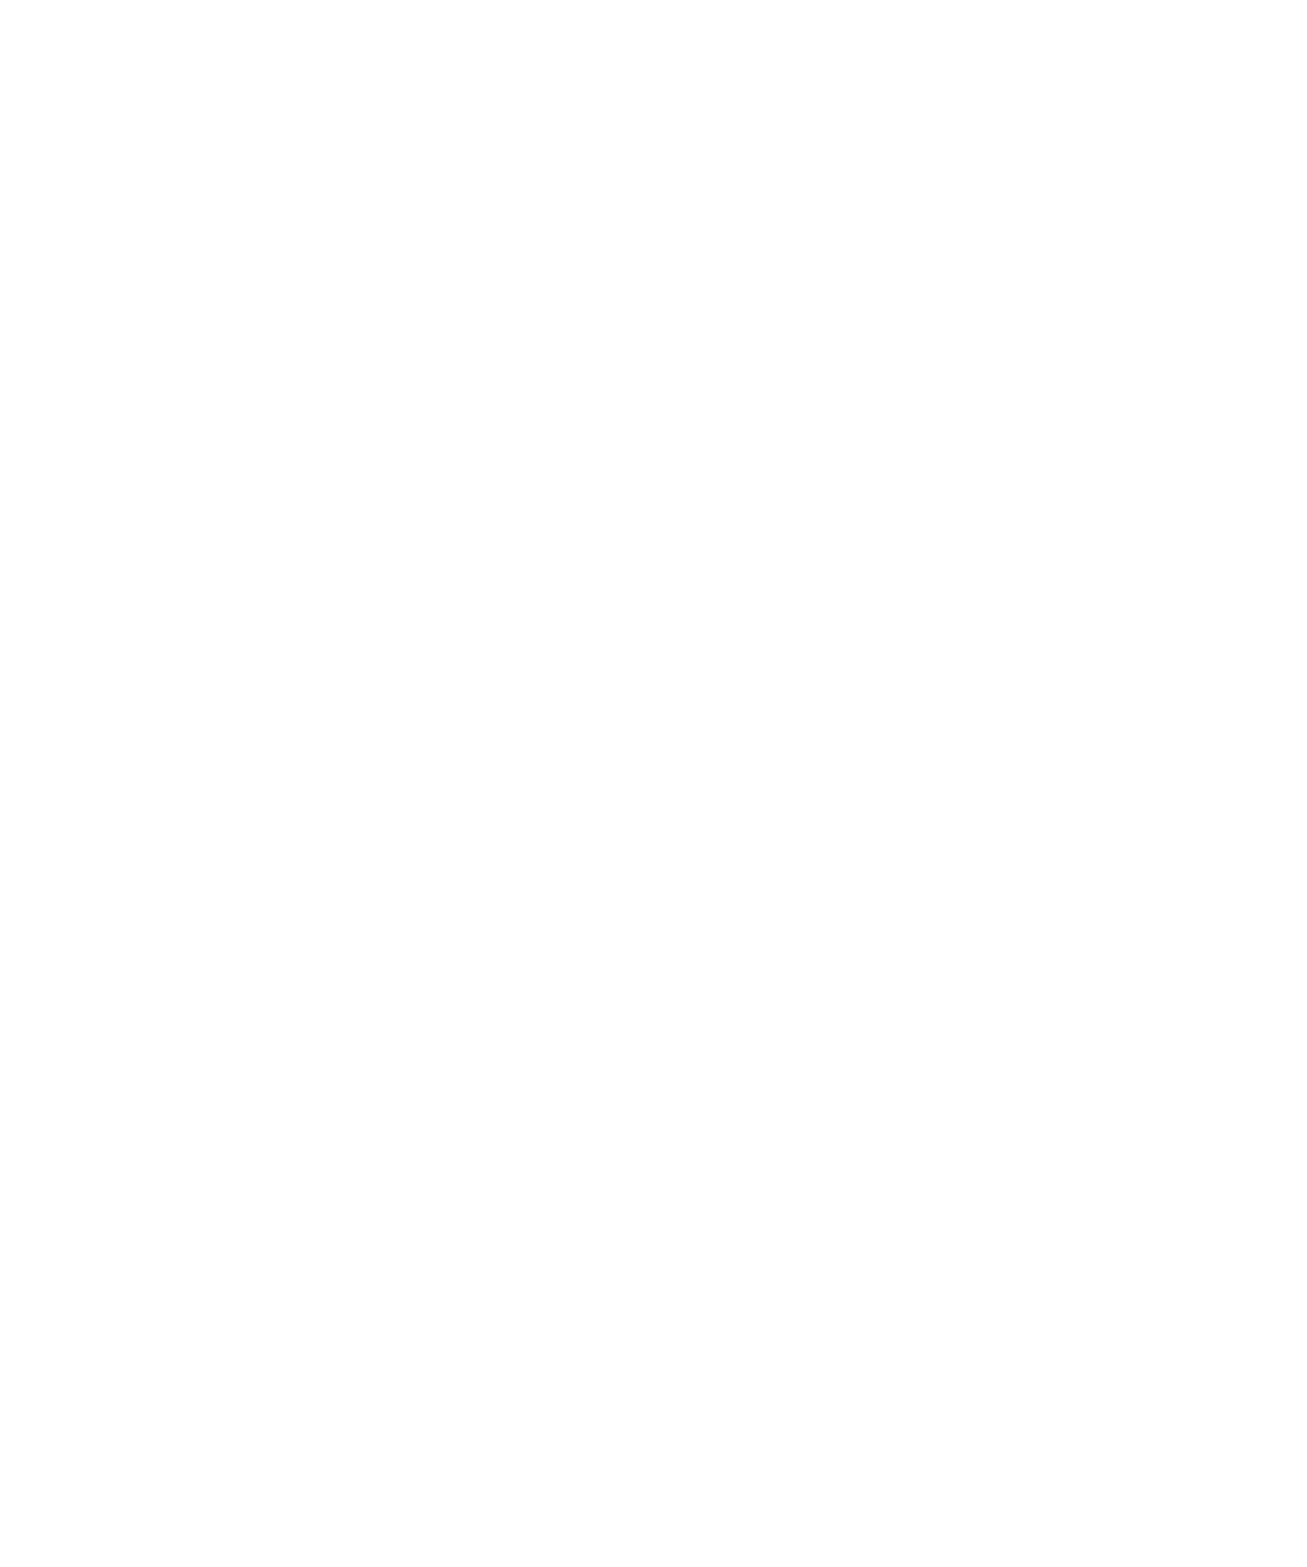 Tactile Medical logo for dark backgrounds (transparent PNG)